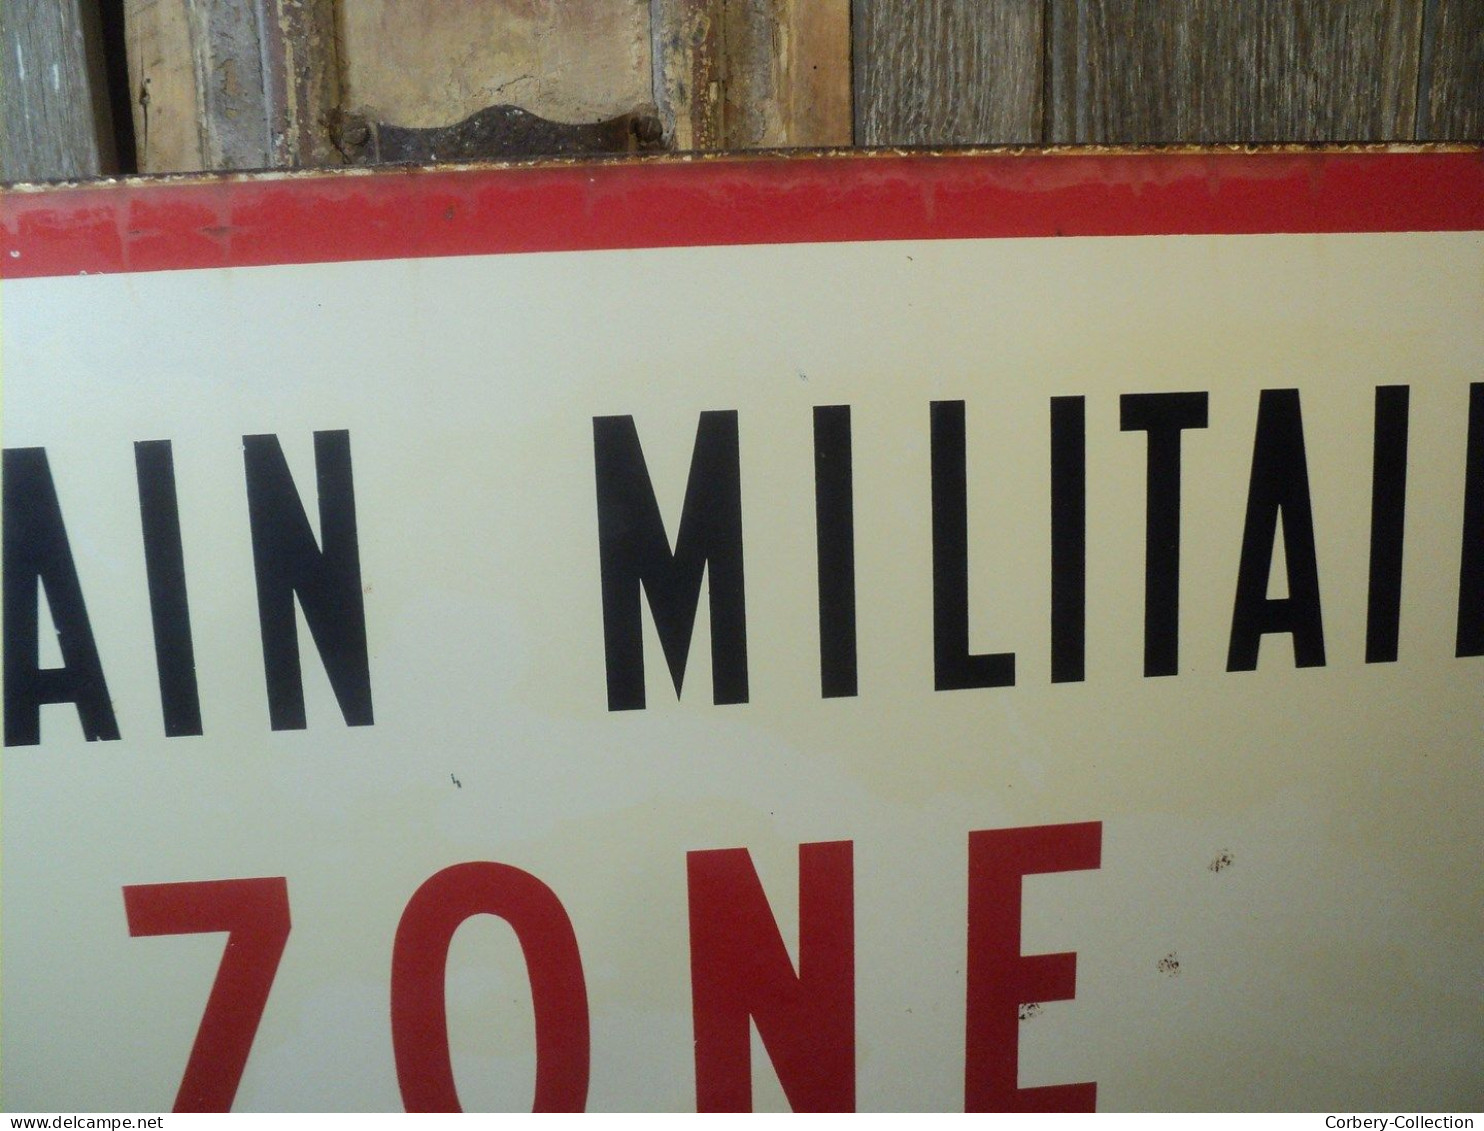 Ancienne Plaque Émaillée Terrain Militaire Zone Interdite Ca1970 - Plaques émaillées (après 1960)